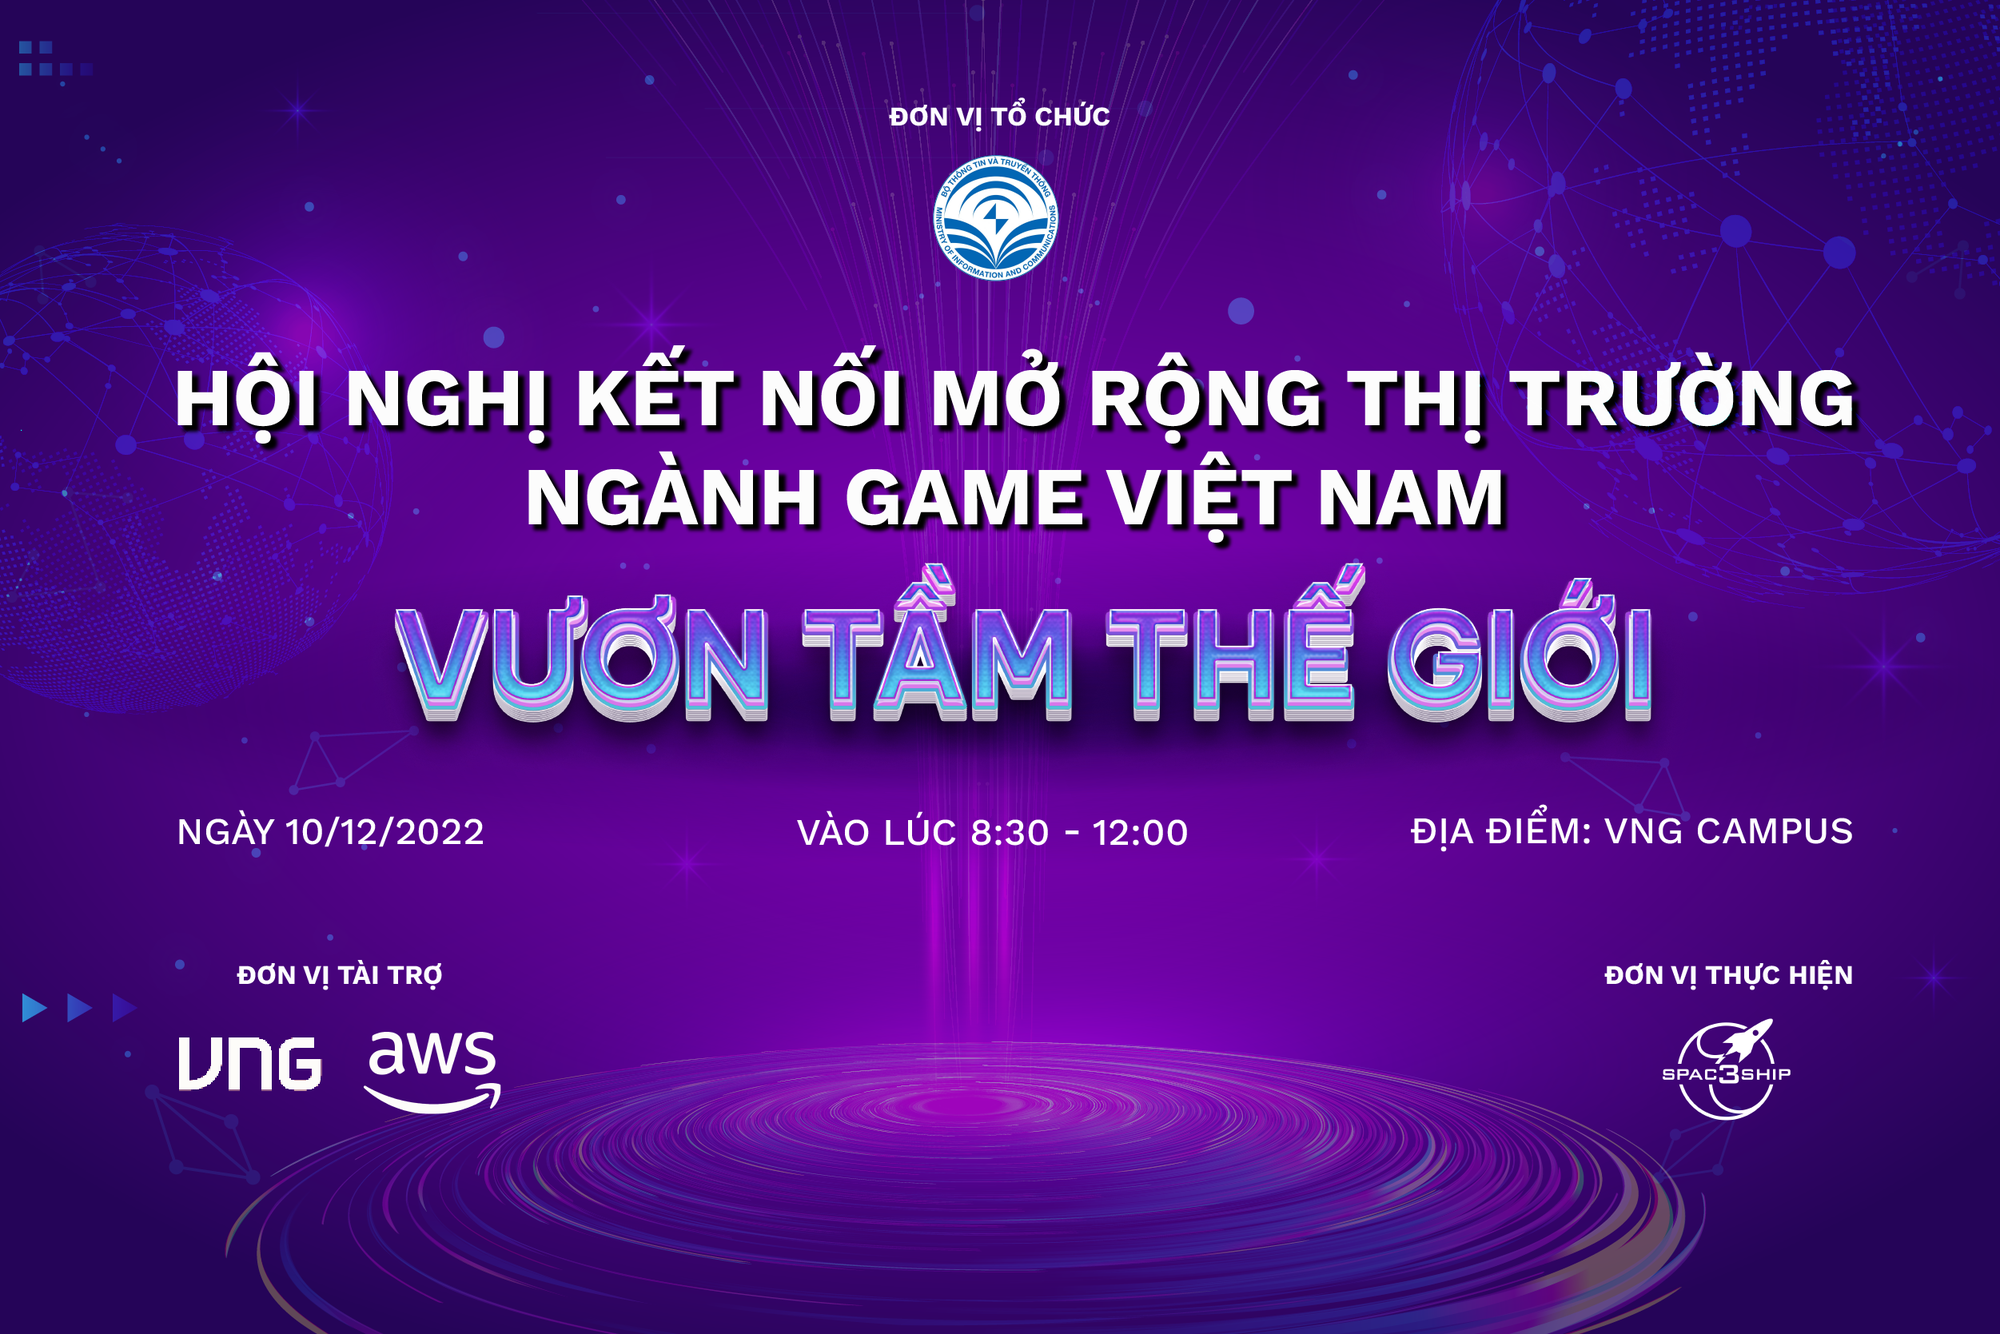 Công bố Hội nghị Kết nối Mở rộng thị trường ngành Game Việt Nam: Tầm nhìn mới cho Game Việt - Ảnh 1.